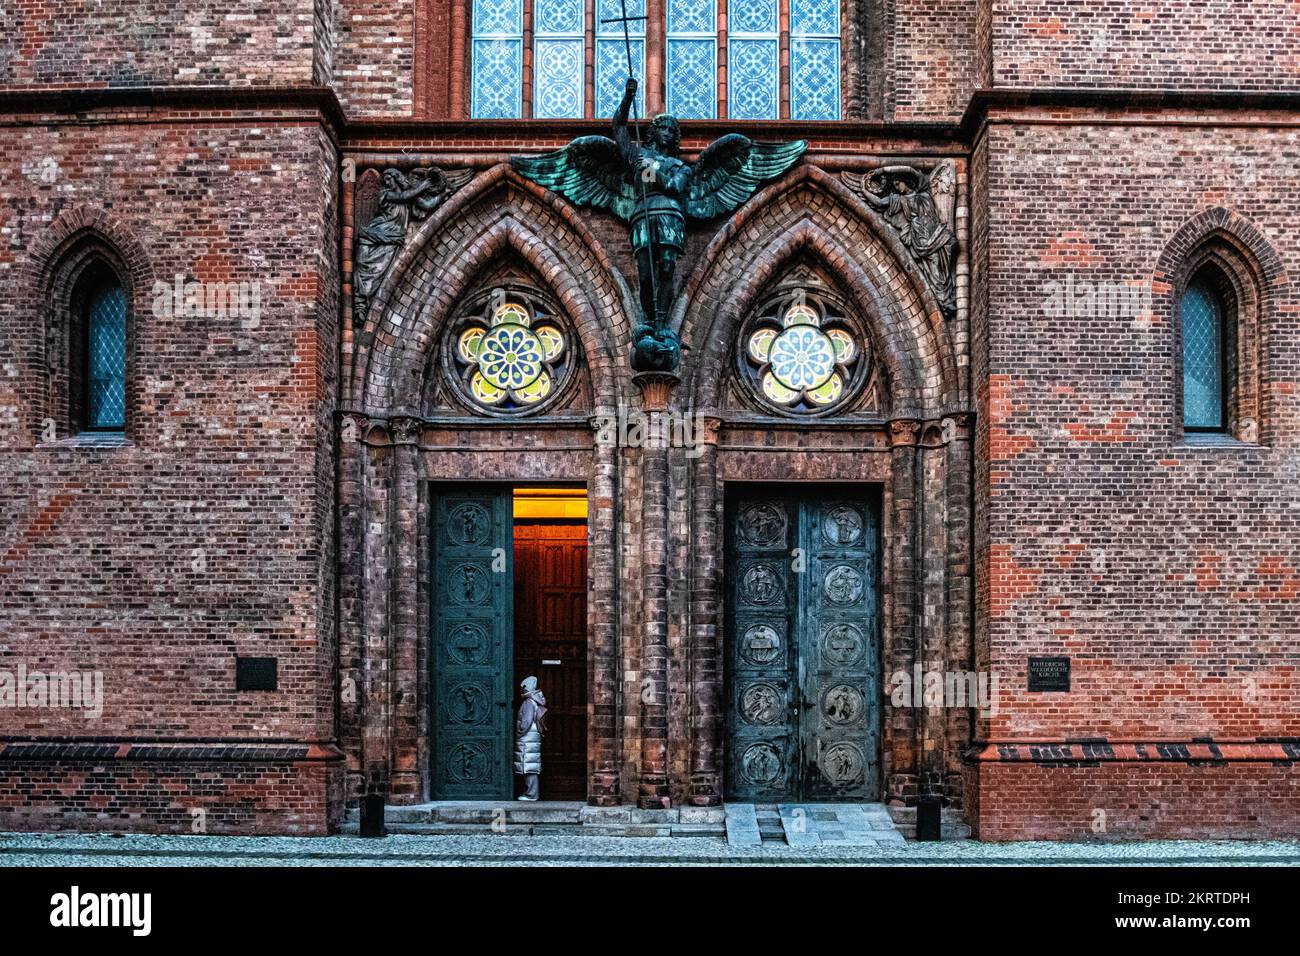 The Friedrichswerder Kirche entrance. Neo-Gothic red Brick church by architect Karl Friedrich Schinkel built 1824-1831,Werderscher Markt, Mitte,Berlin Stock Photo